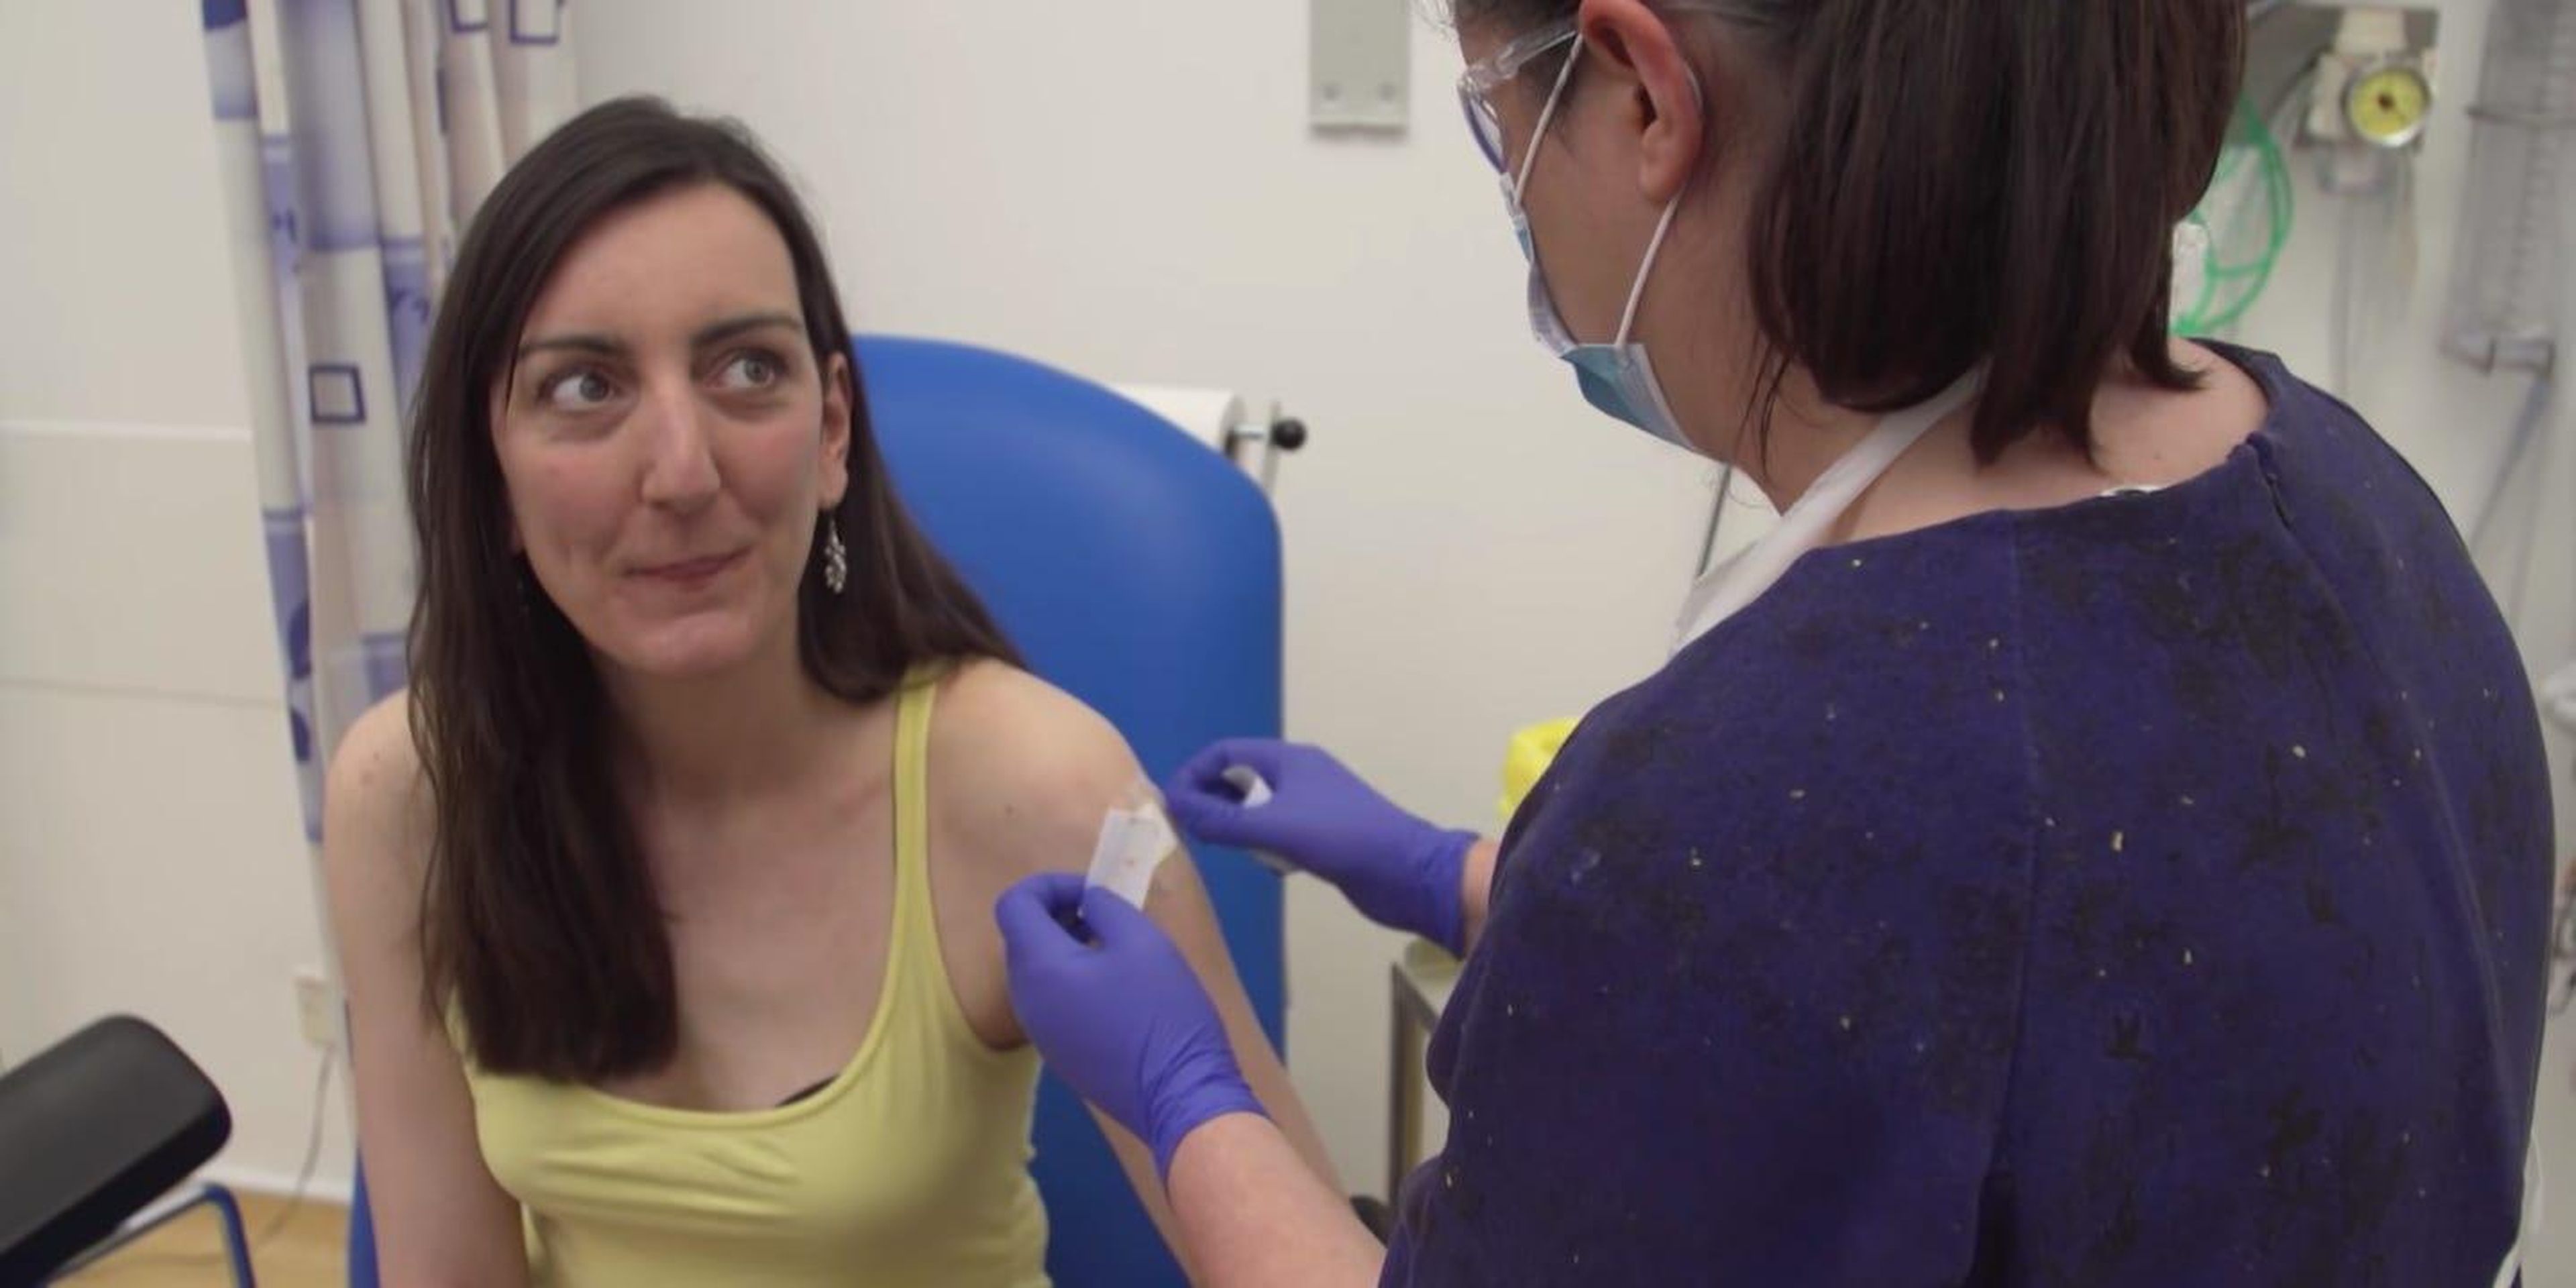 La científica Elisa Granato es la primera persona que ha recibido una dosis de la vacuna hAdOx1 nCoV-19 desarrollada en Oxford.